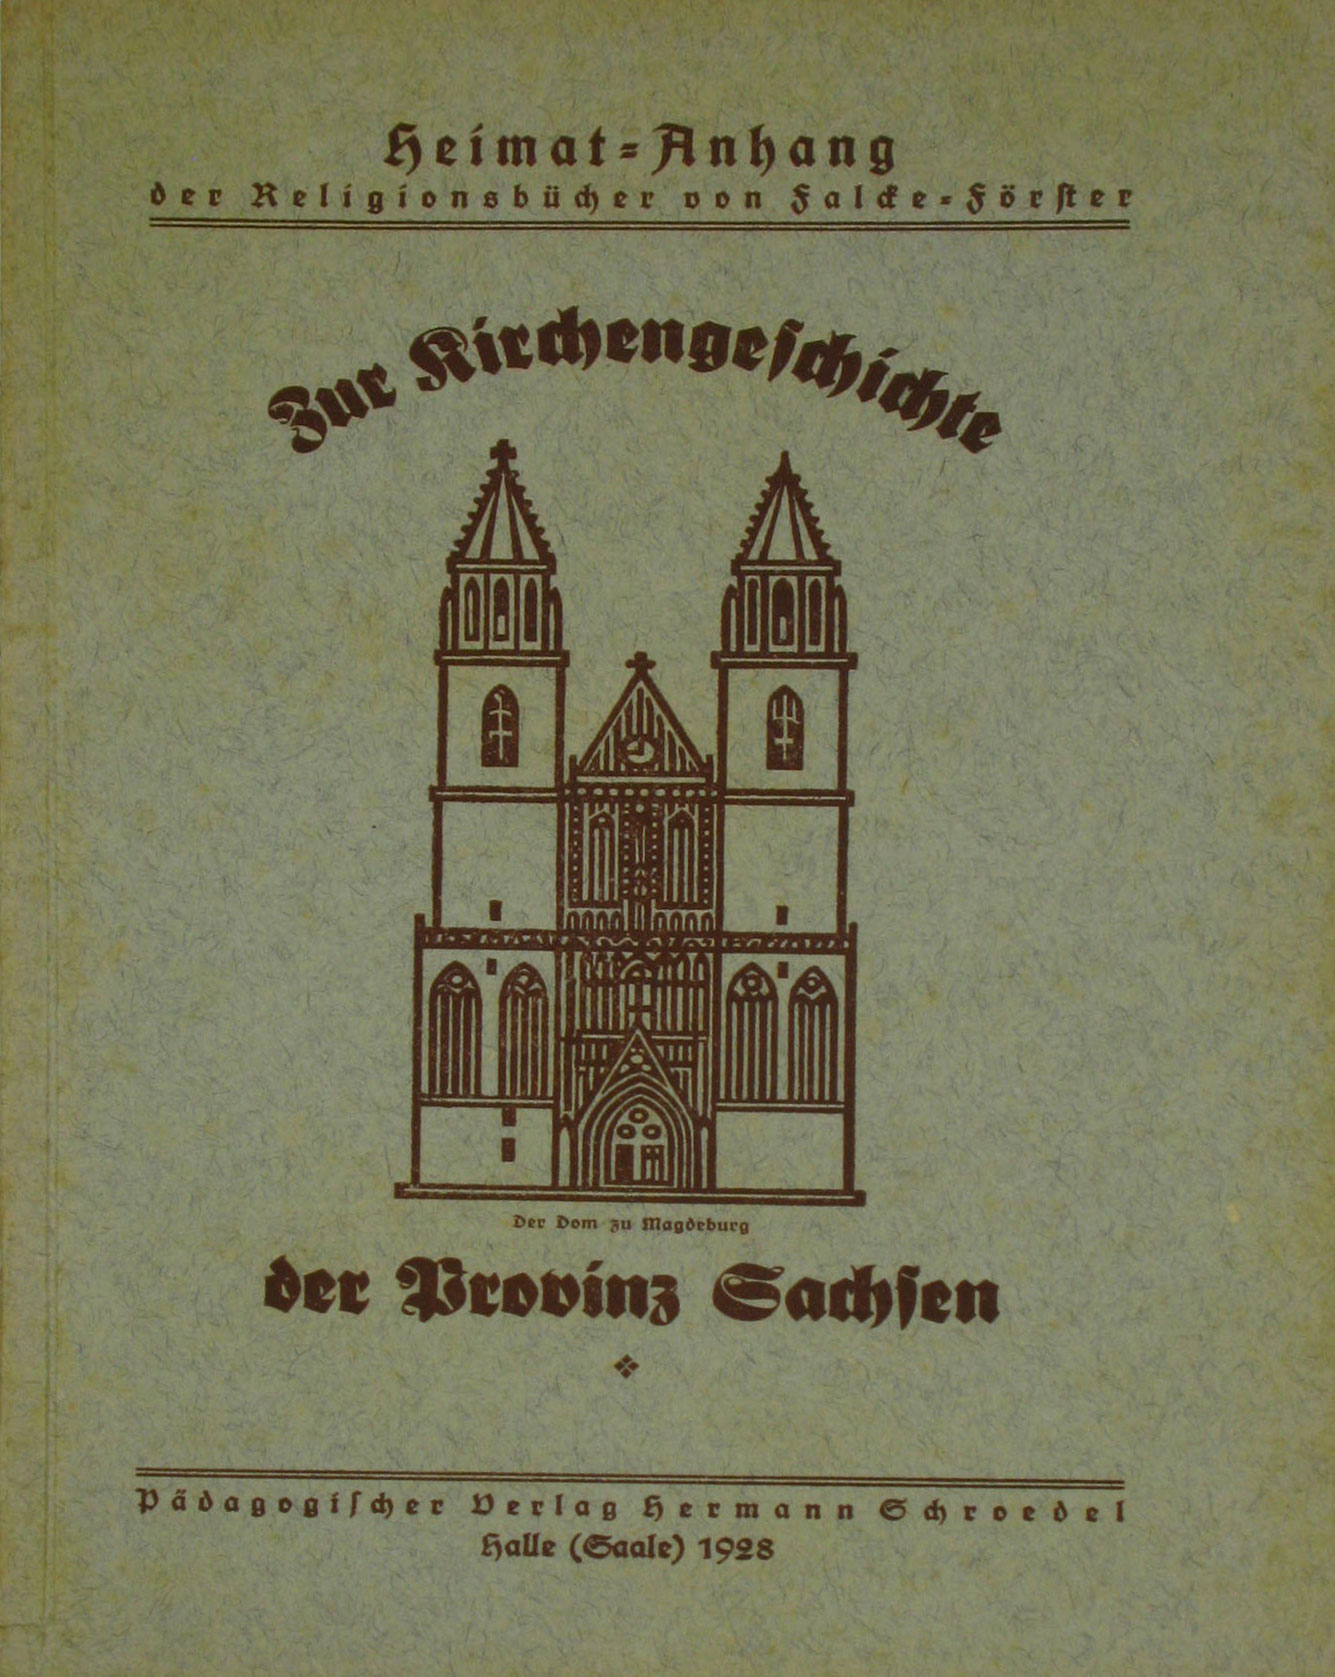   Die Kirchengeschichte der Provinz Sachsen 